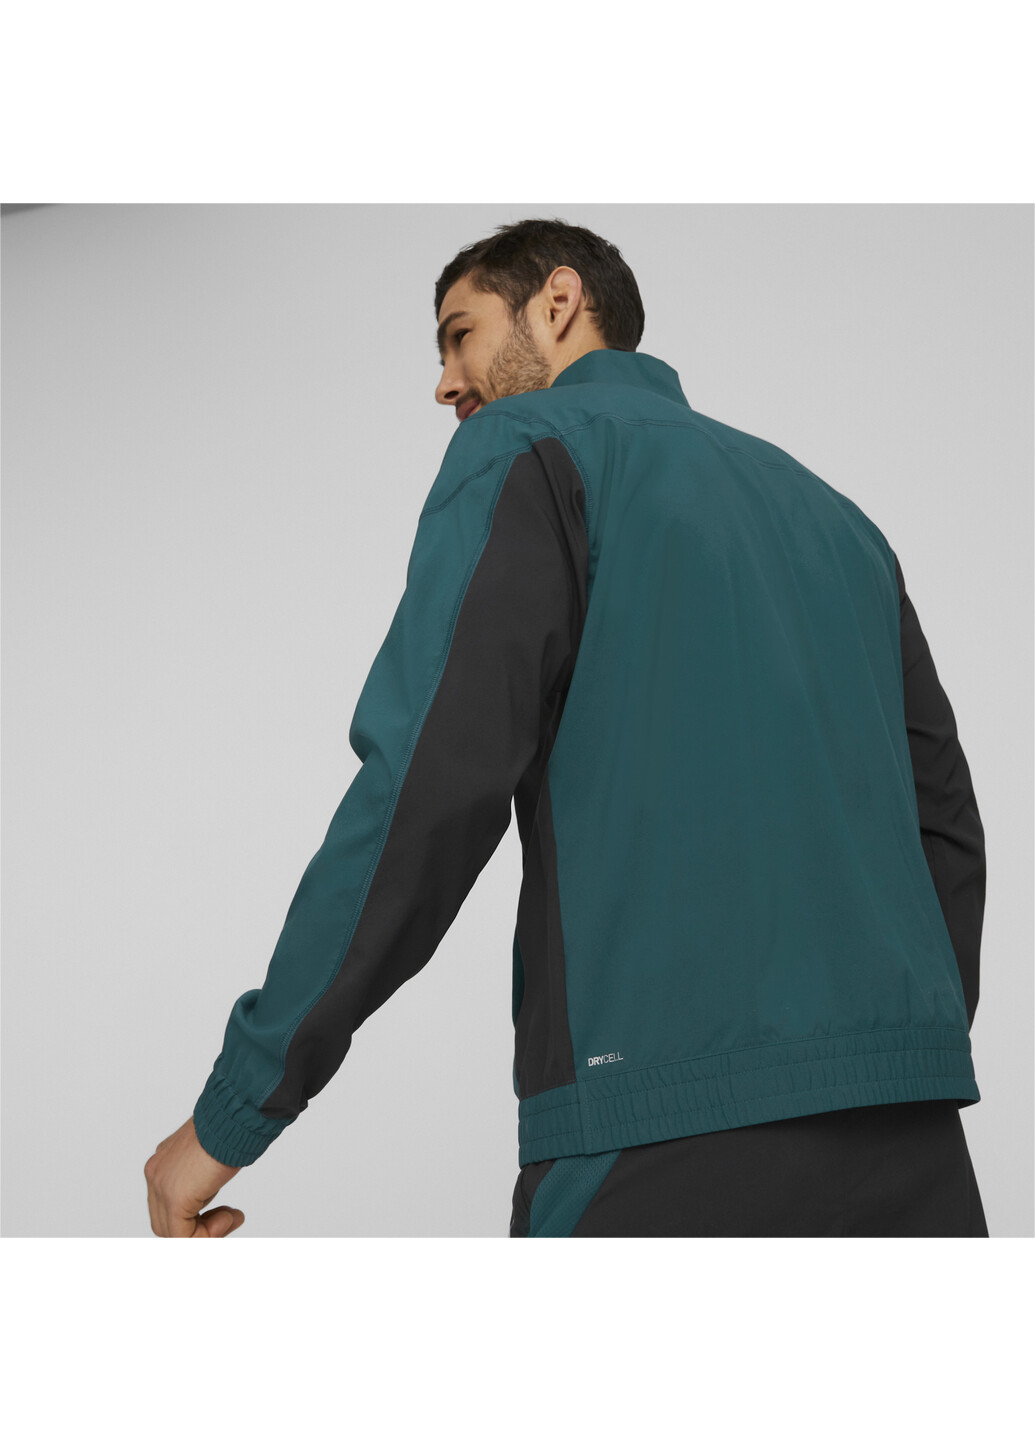 Зеленая демисезонная куртка fit woven half-zip training jacket men Puma